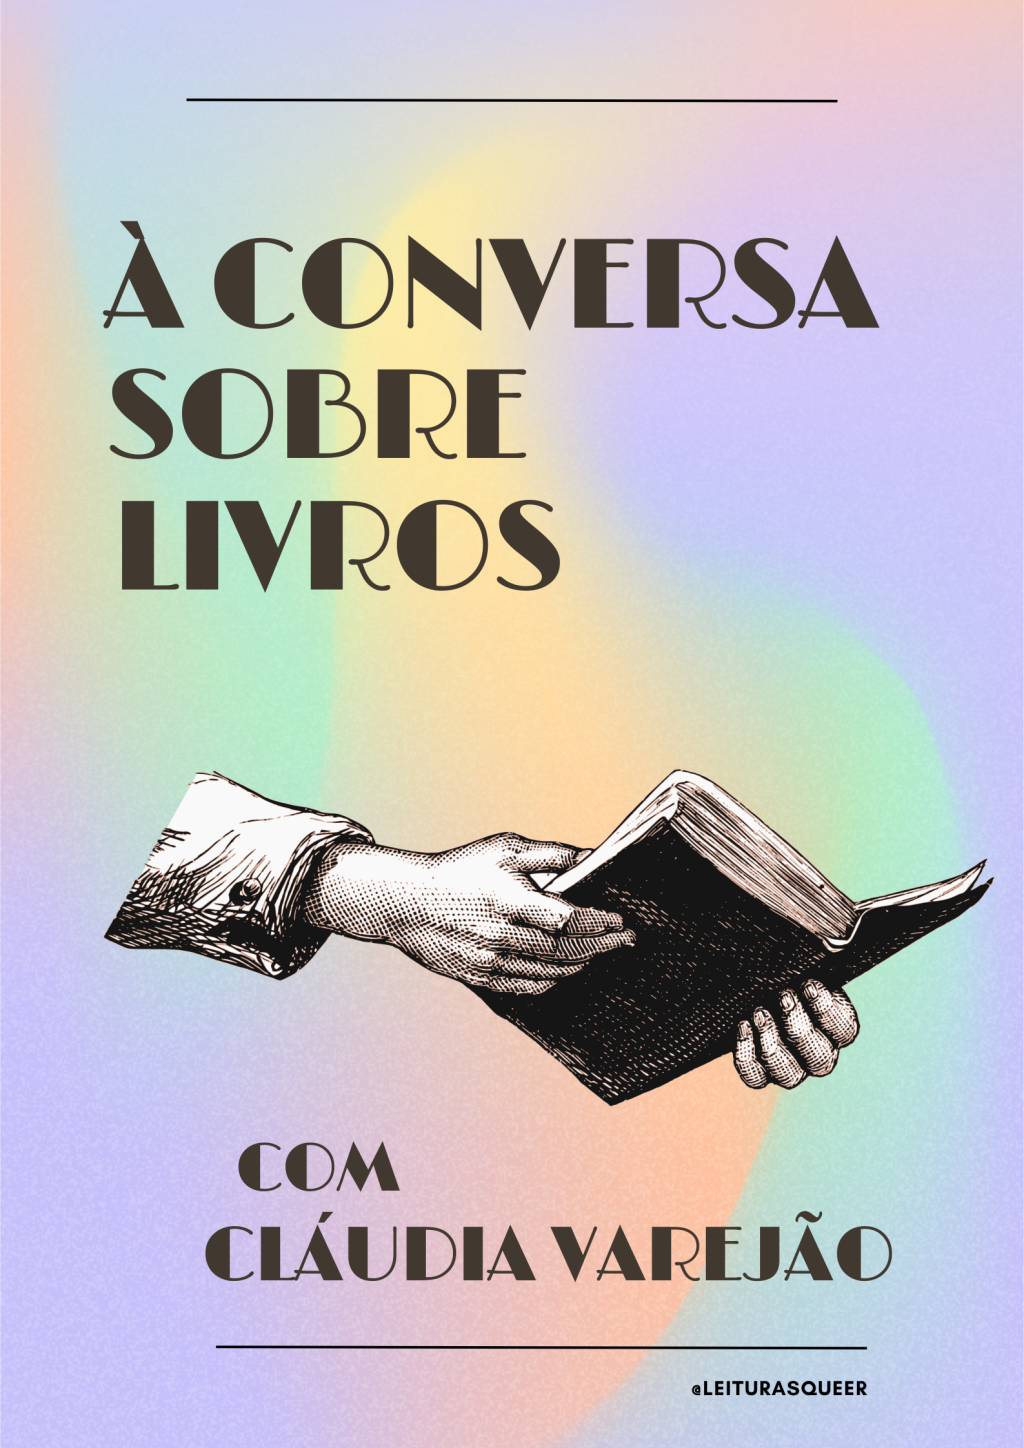 À Conversa sobre Livros com Cláudia Varejão